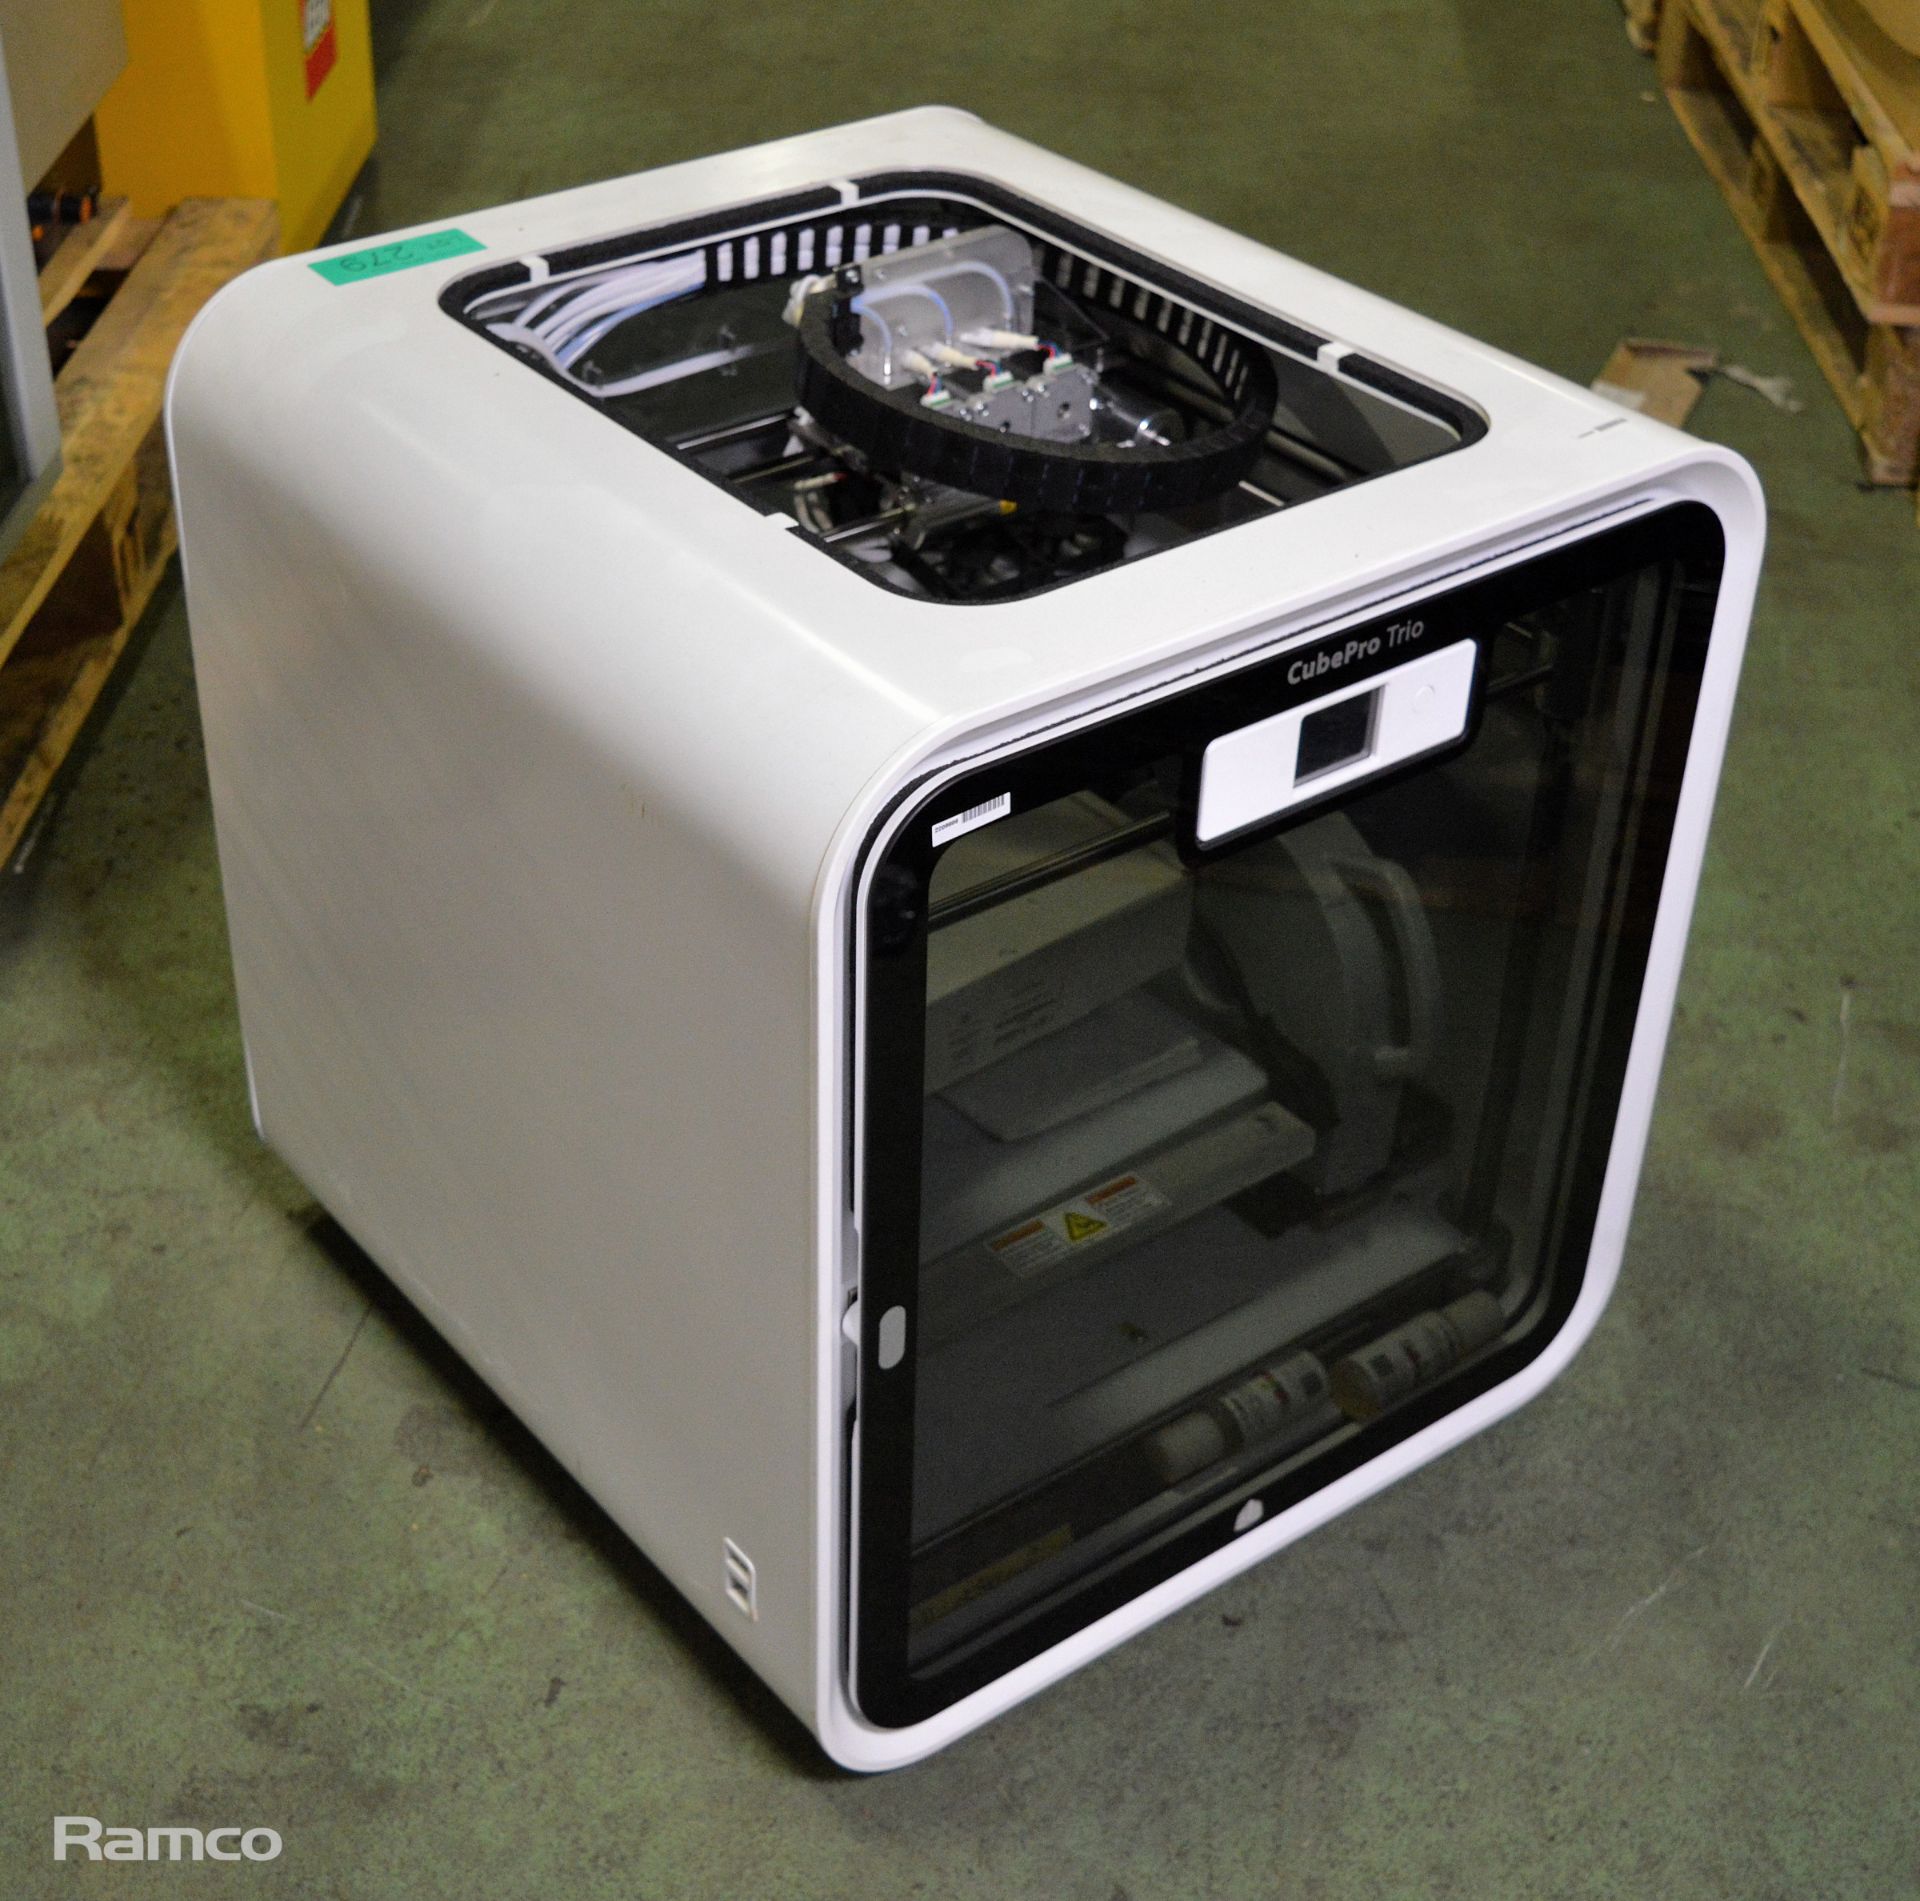 CubePro Trio 401735 3D Printer